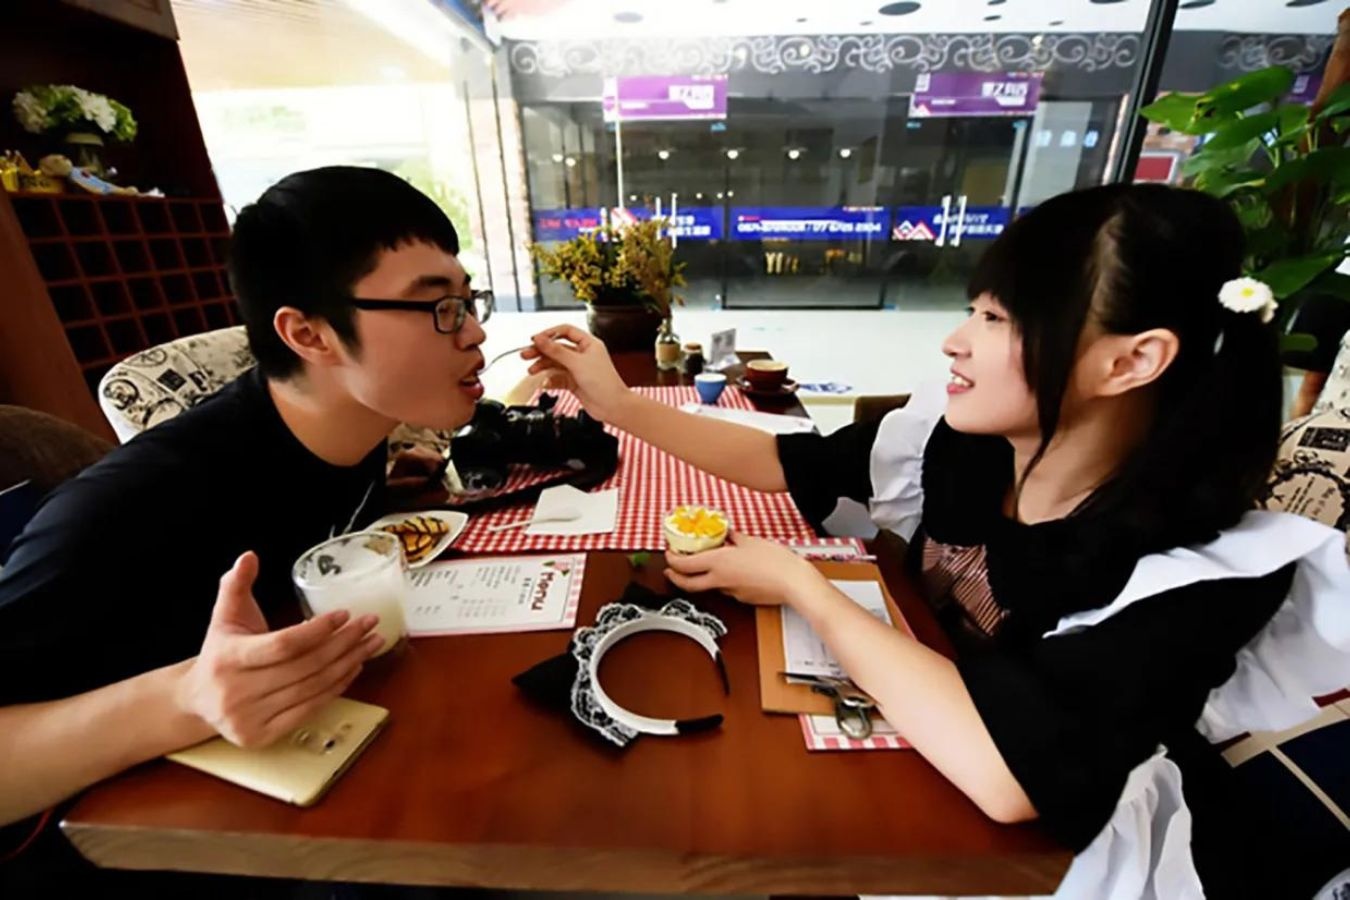 Tẩy chay cà phê hầu gái, gọi khách là ''chủ nhân'' tại Trung Quốc - ảnh 4